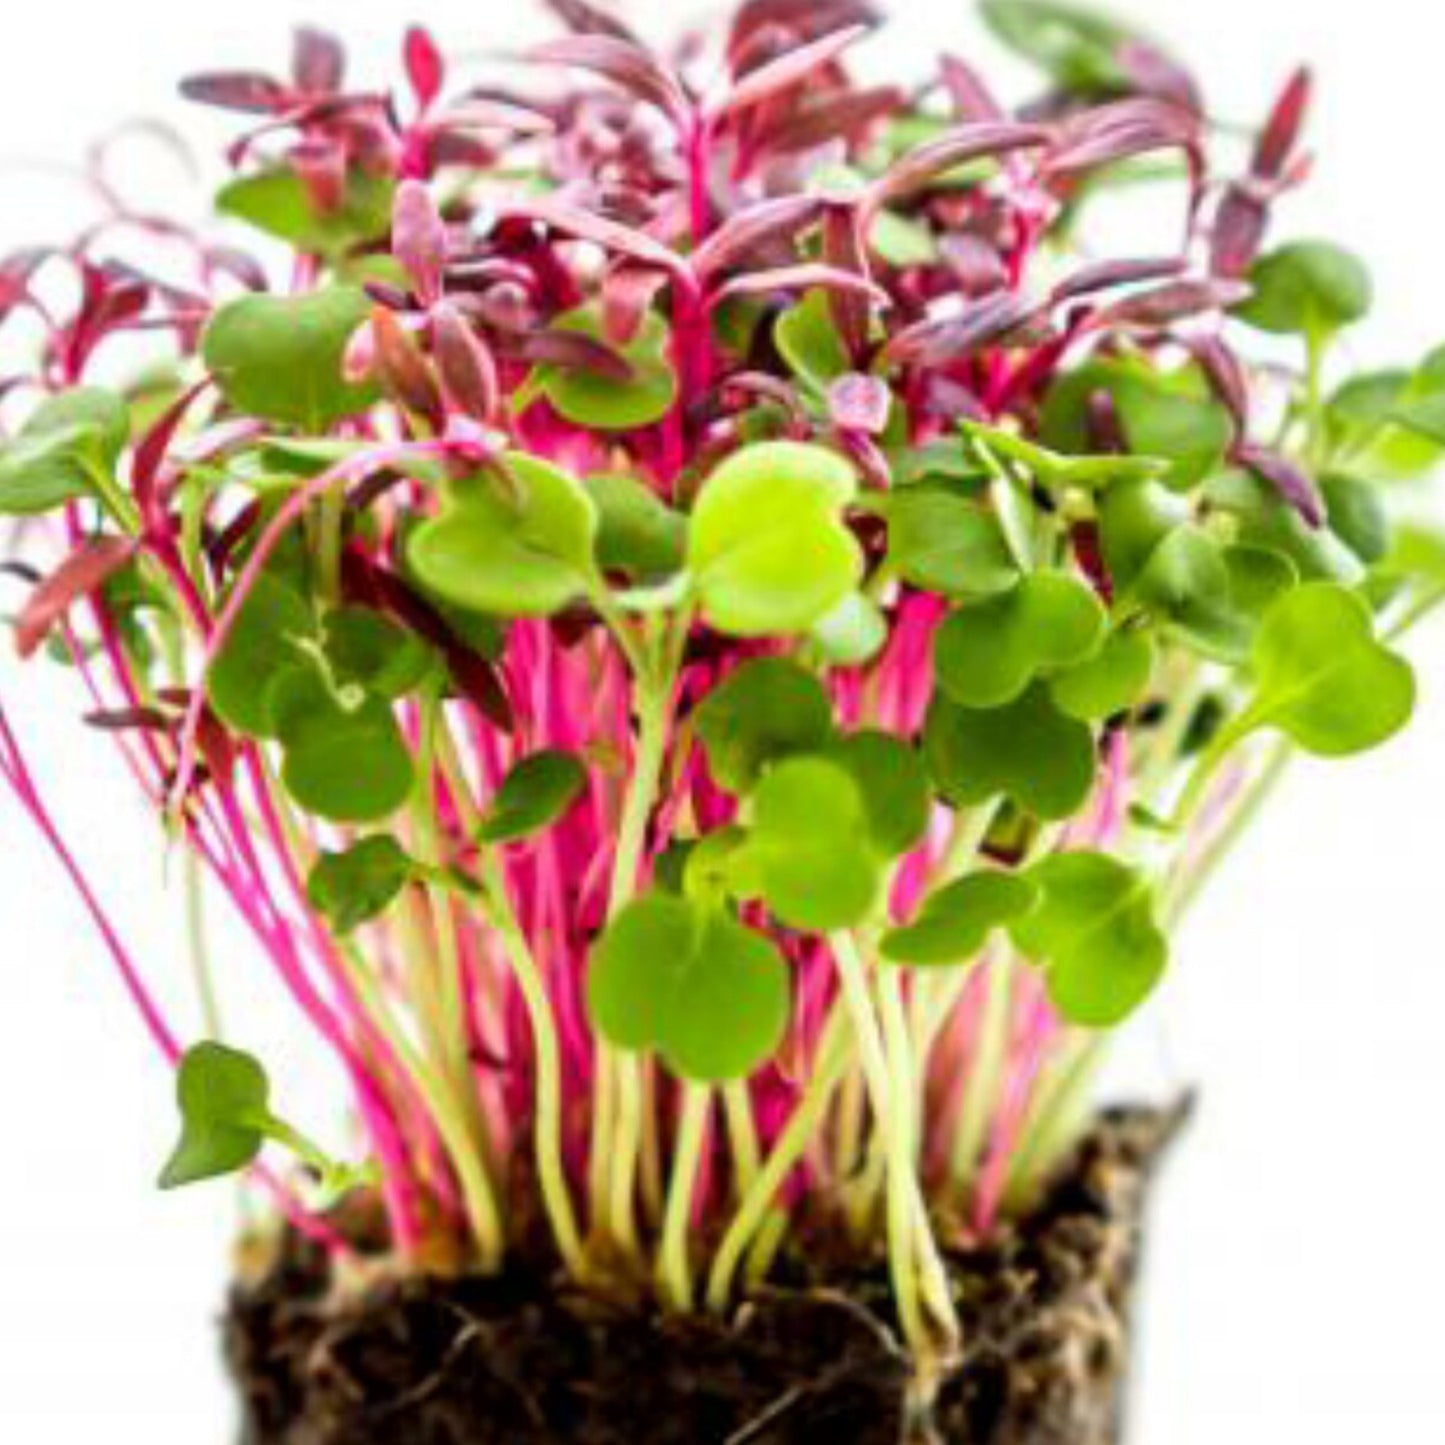 Micro Salad MIx-Organic Microgreen Seed